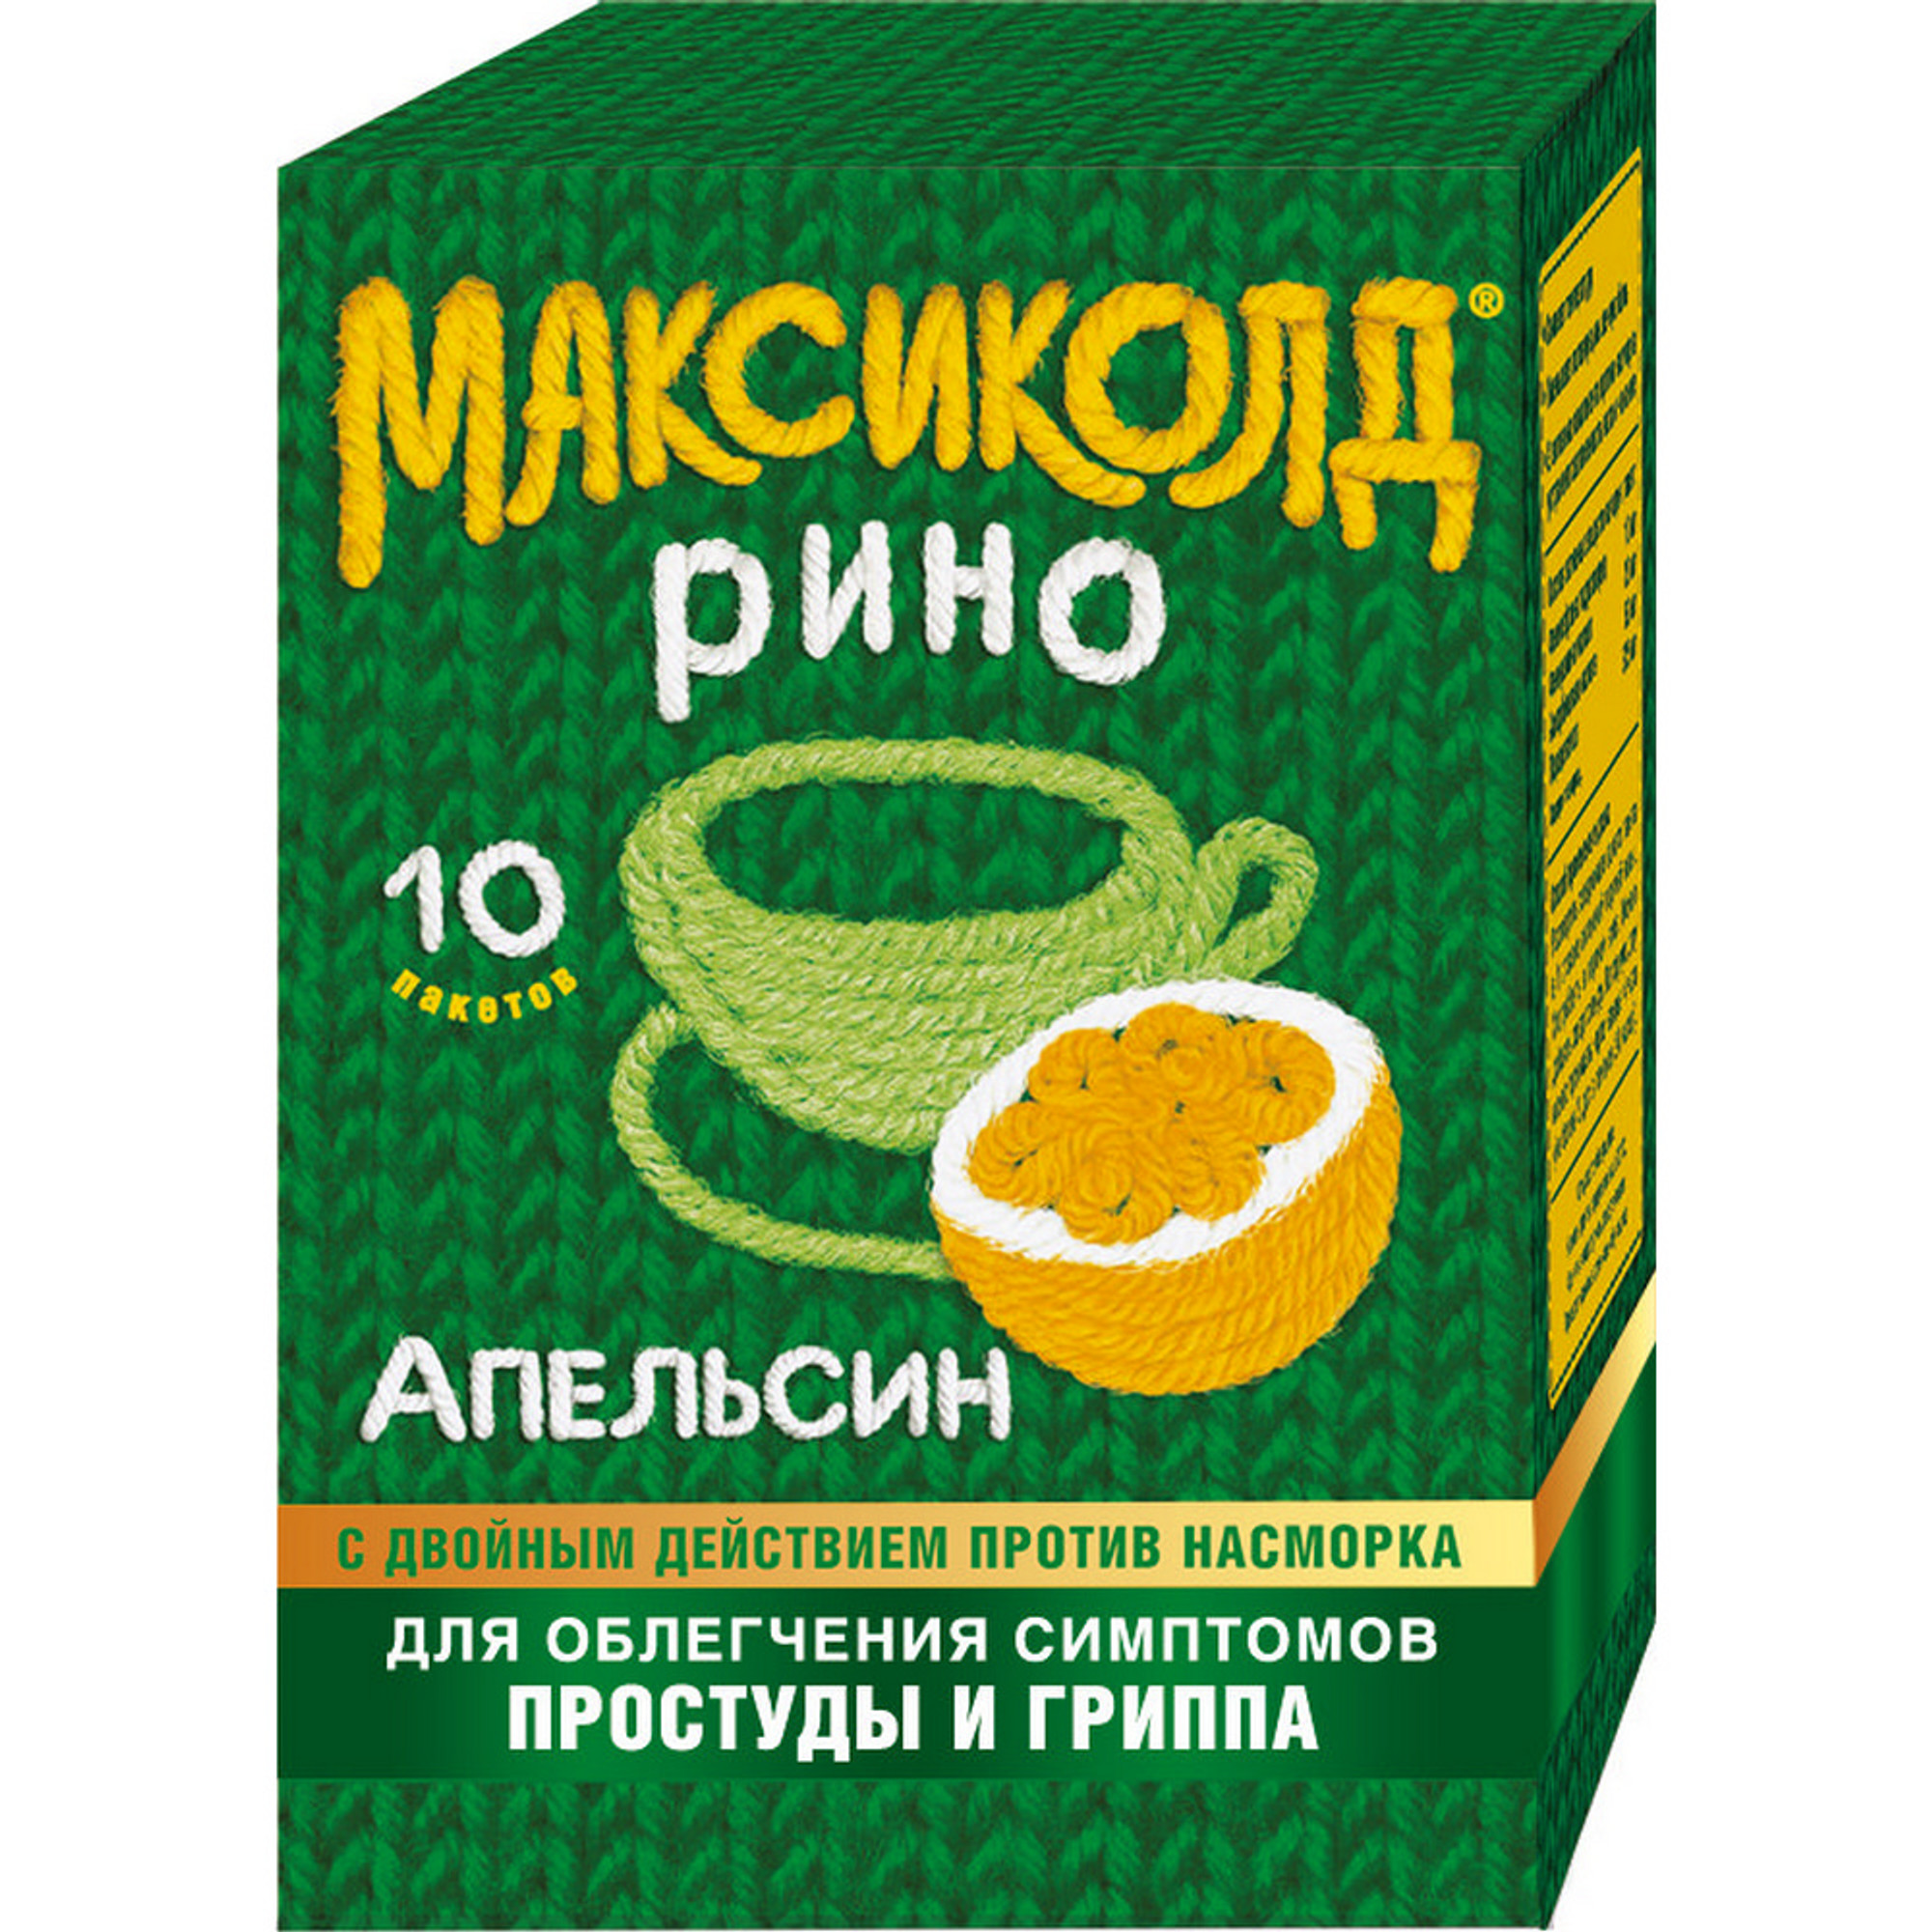 Максиколд Рино, порошок (апельсин), пакетики 15 г, 10 шт. дона порошок 1500 мг пакетики 20 шт